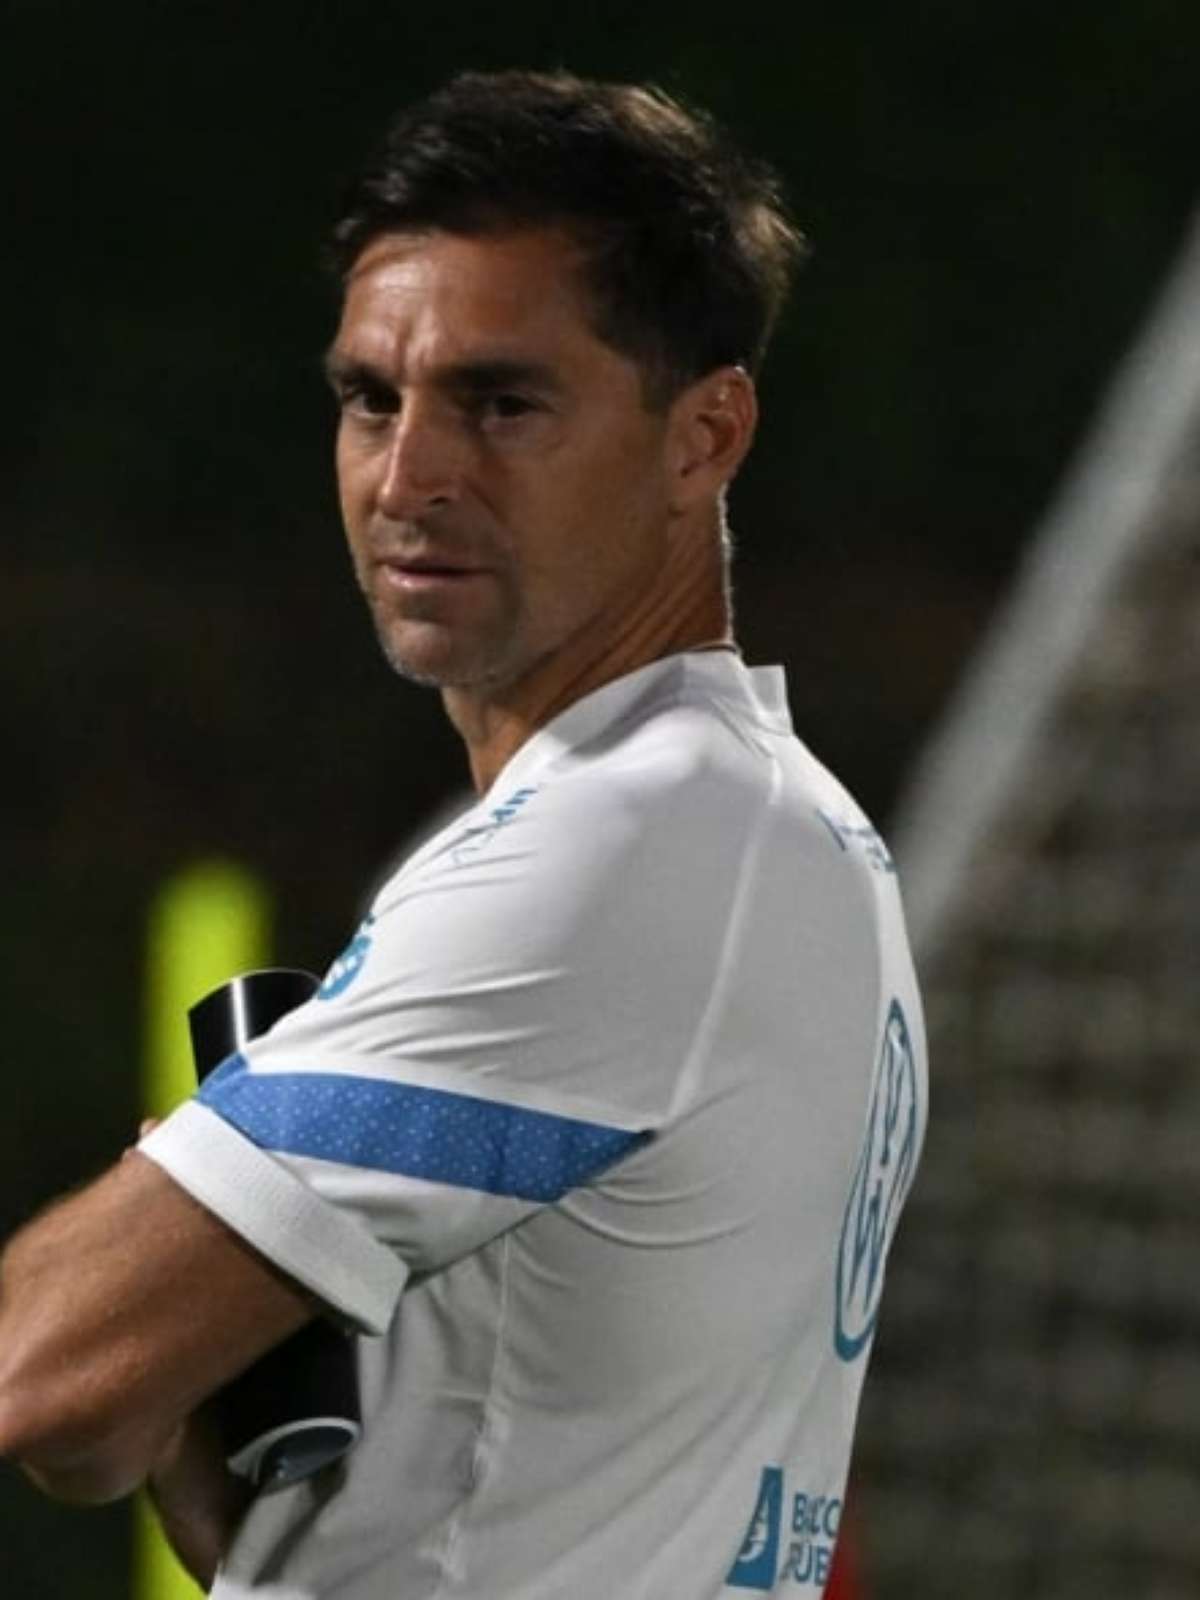 Isso não vai nos definir', diz treinador do Uruguai sobre empate na estreia  da Copa - Lance!